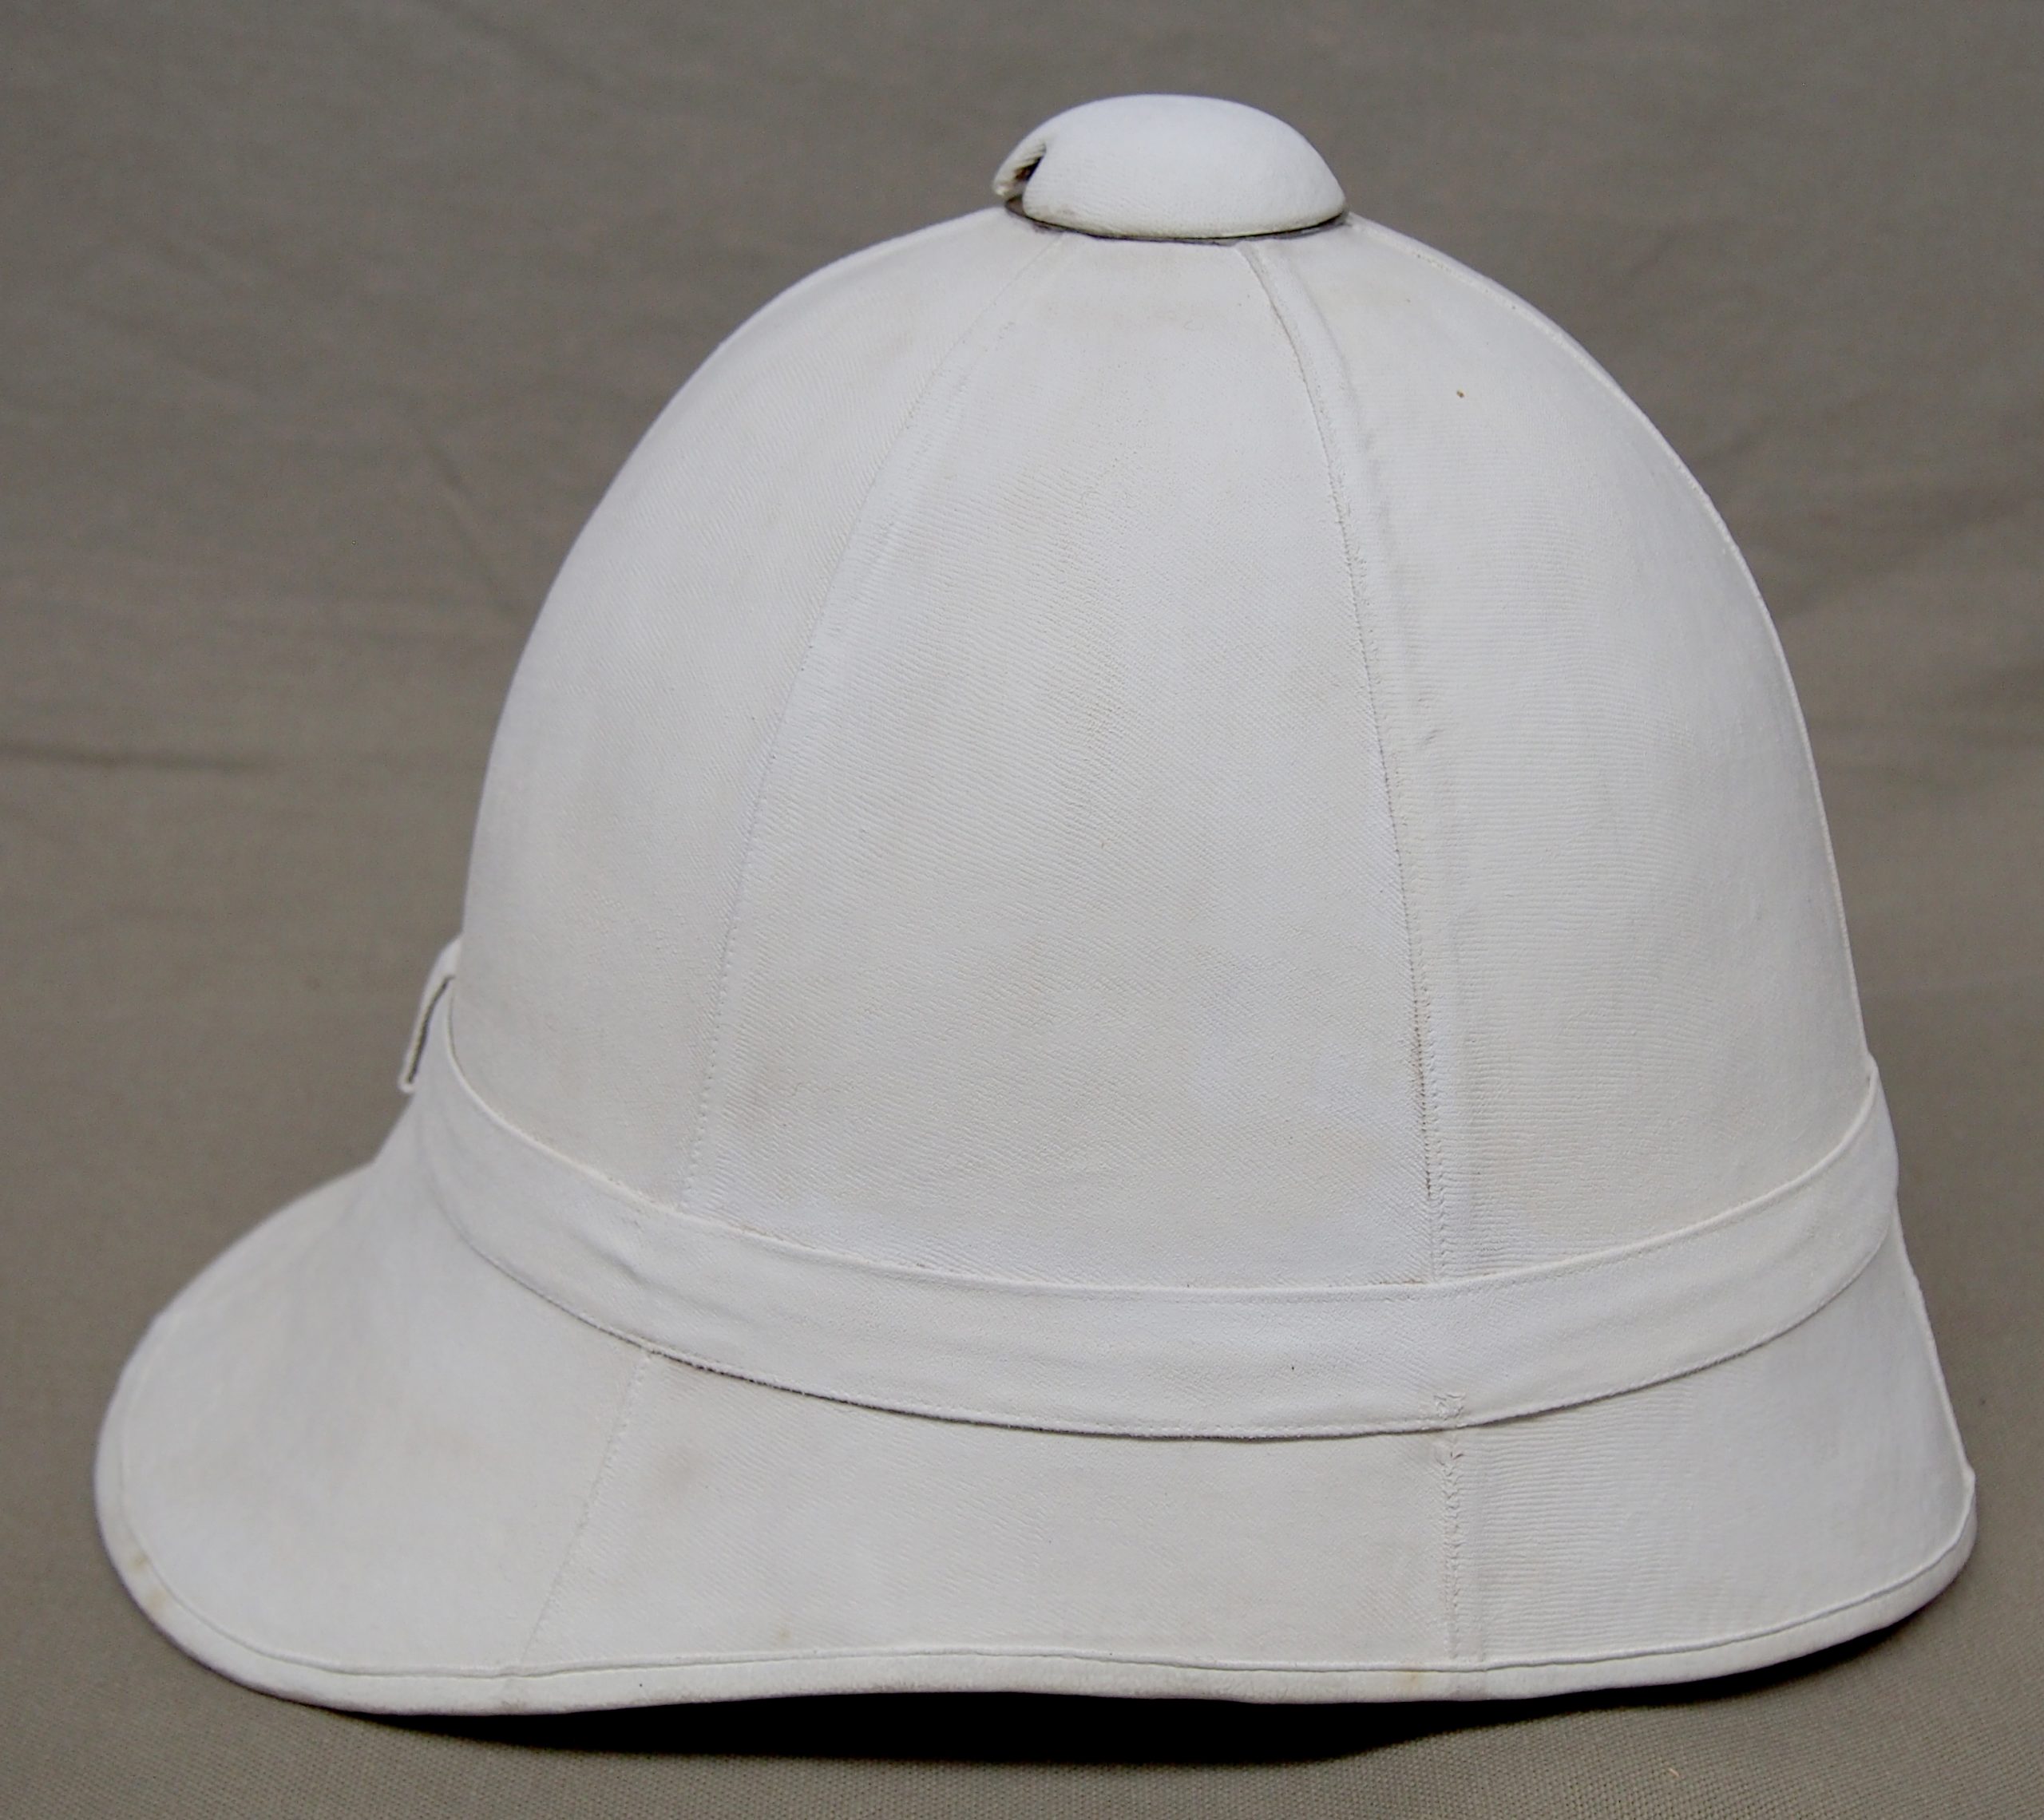 White sun helmet